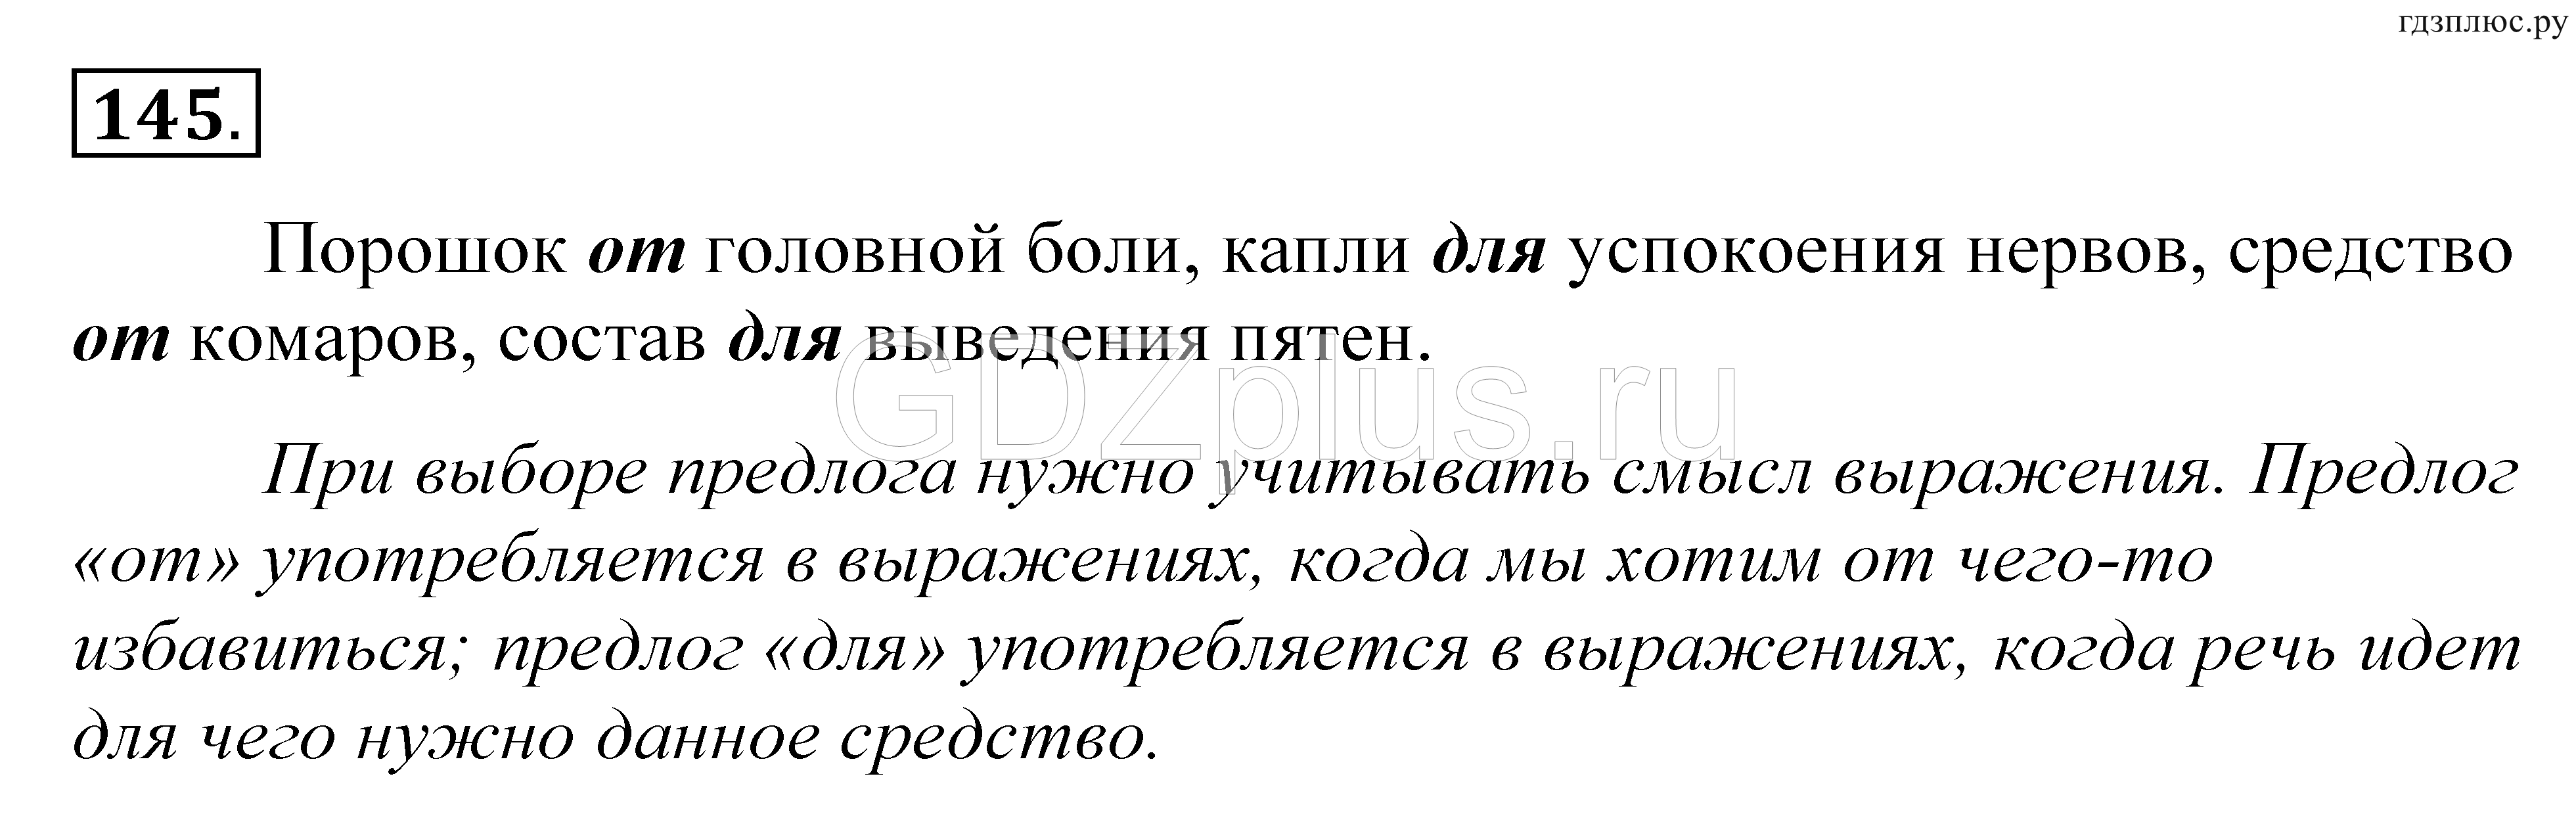 Русский страница 84 упражнение 145. Глаголы на упражнение 145 русский язык.